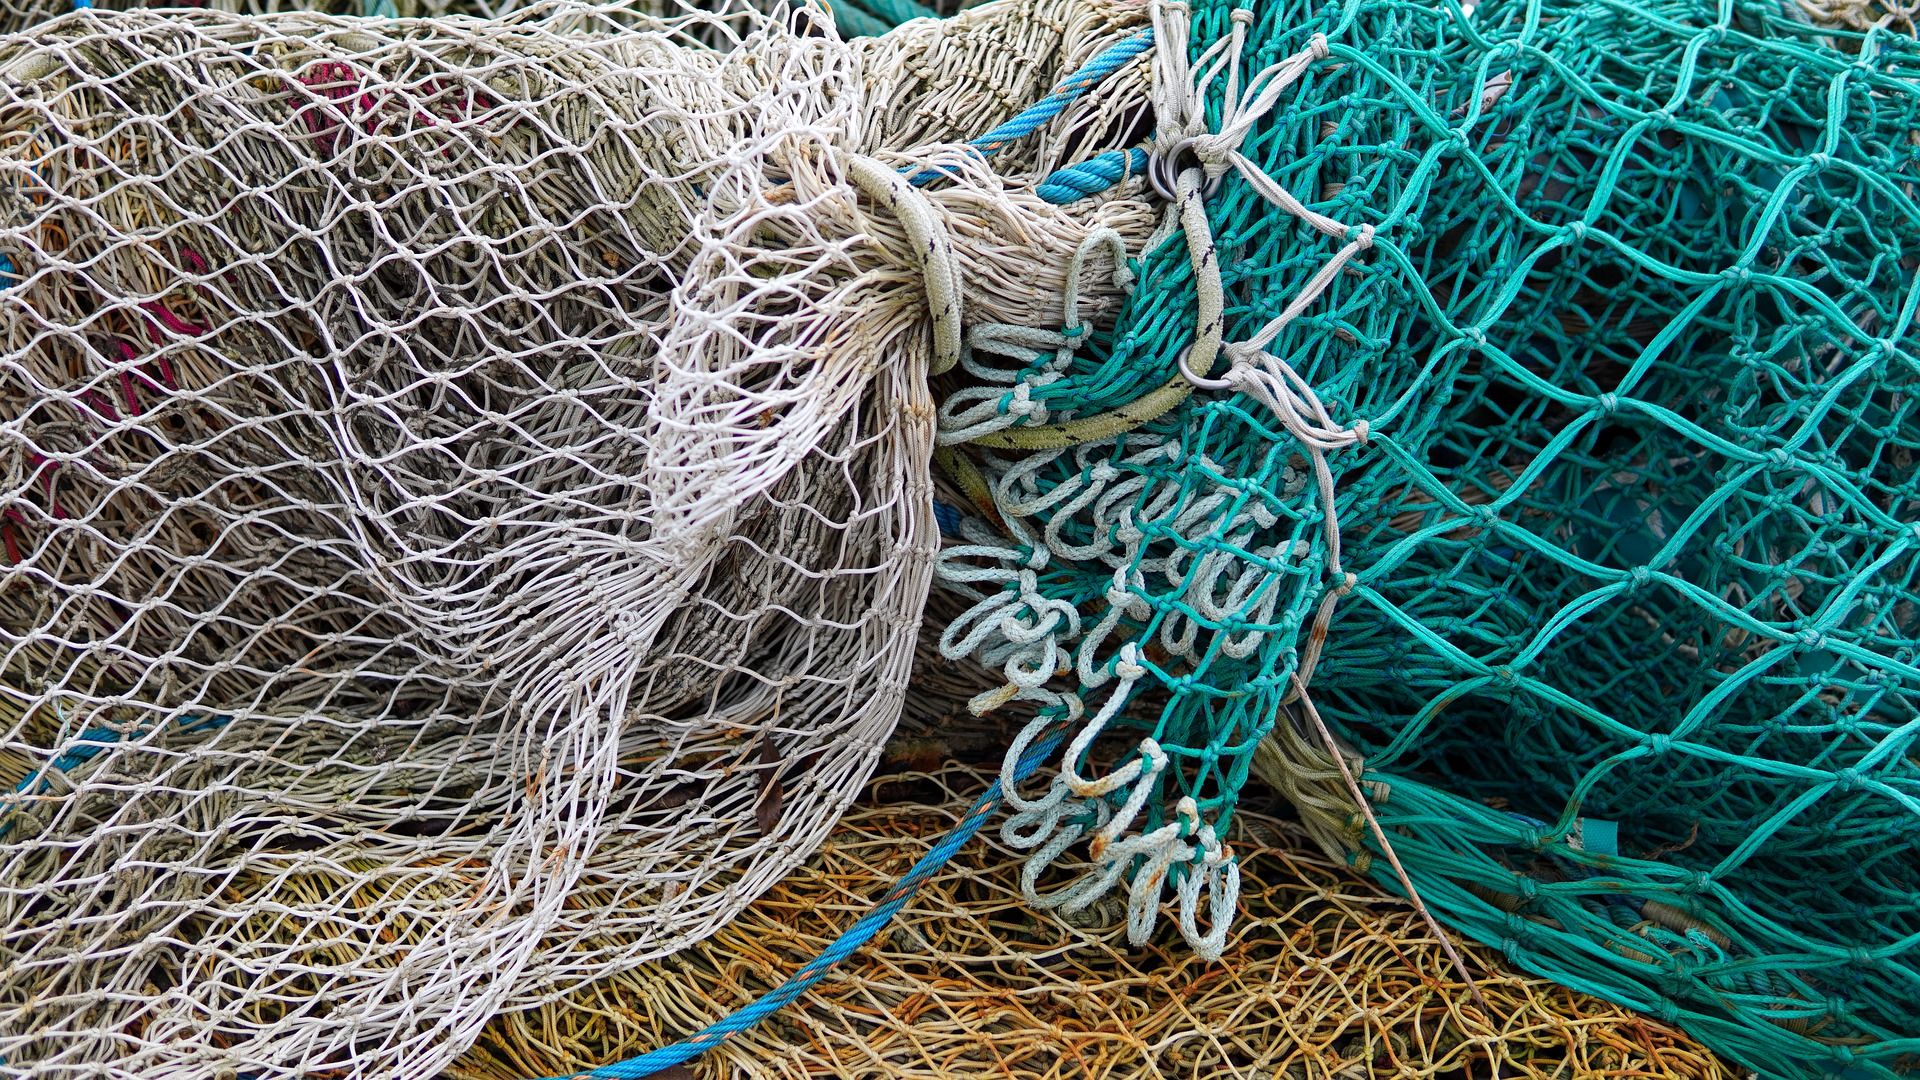 Trazabilidad en redes de pesca - Pescare, red de pesca